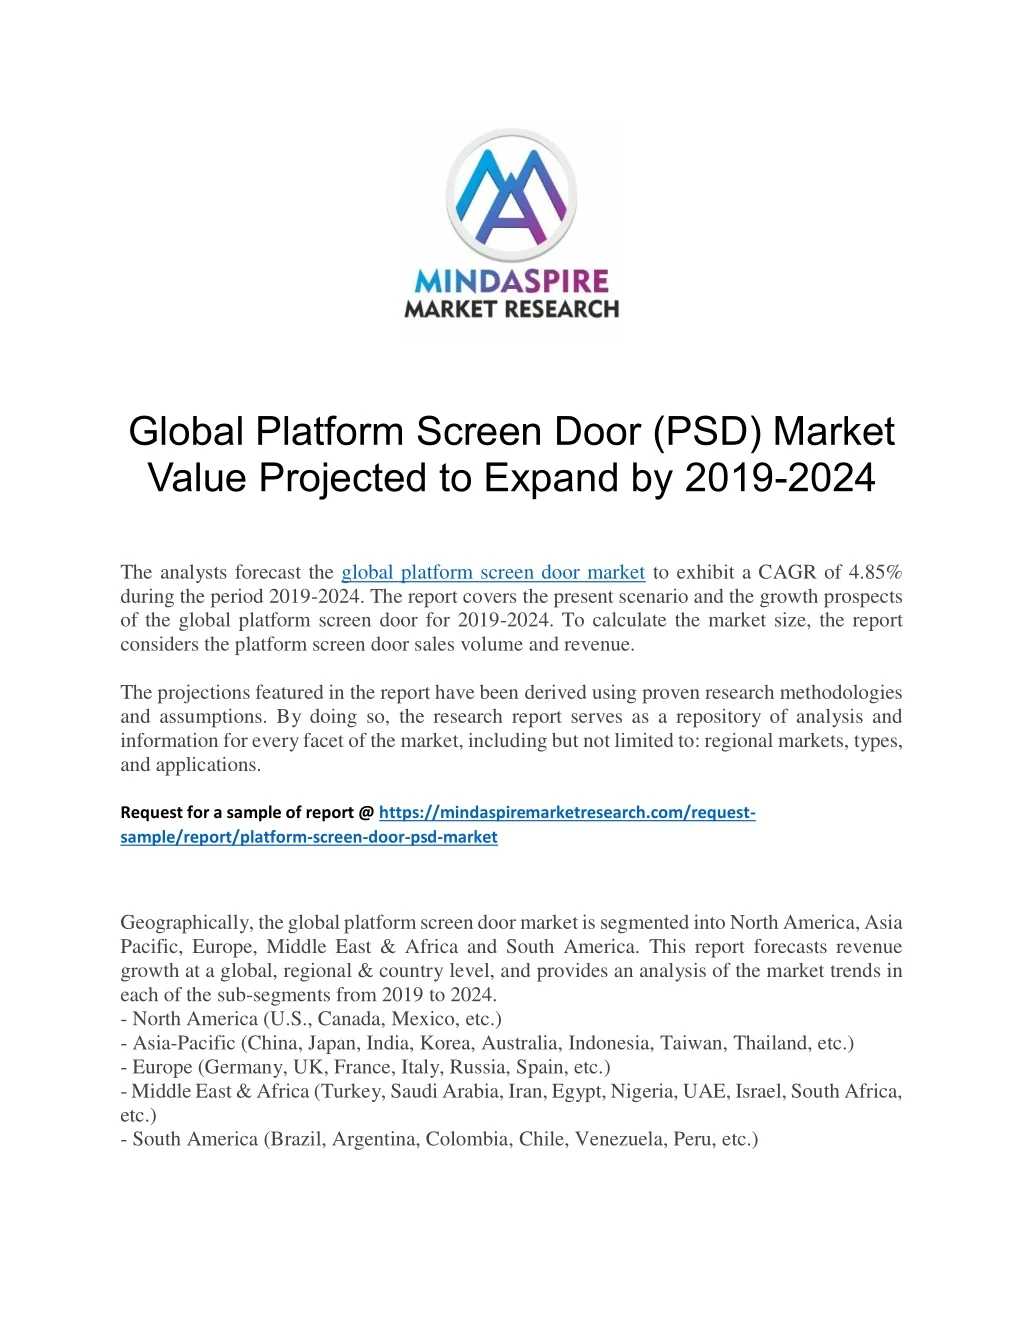 global platform screen door psd market value